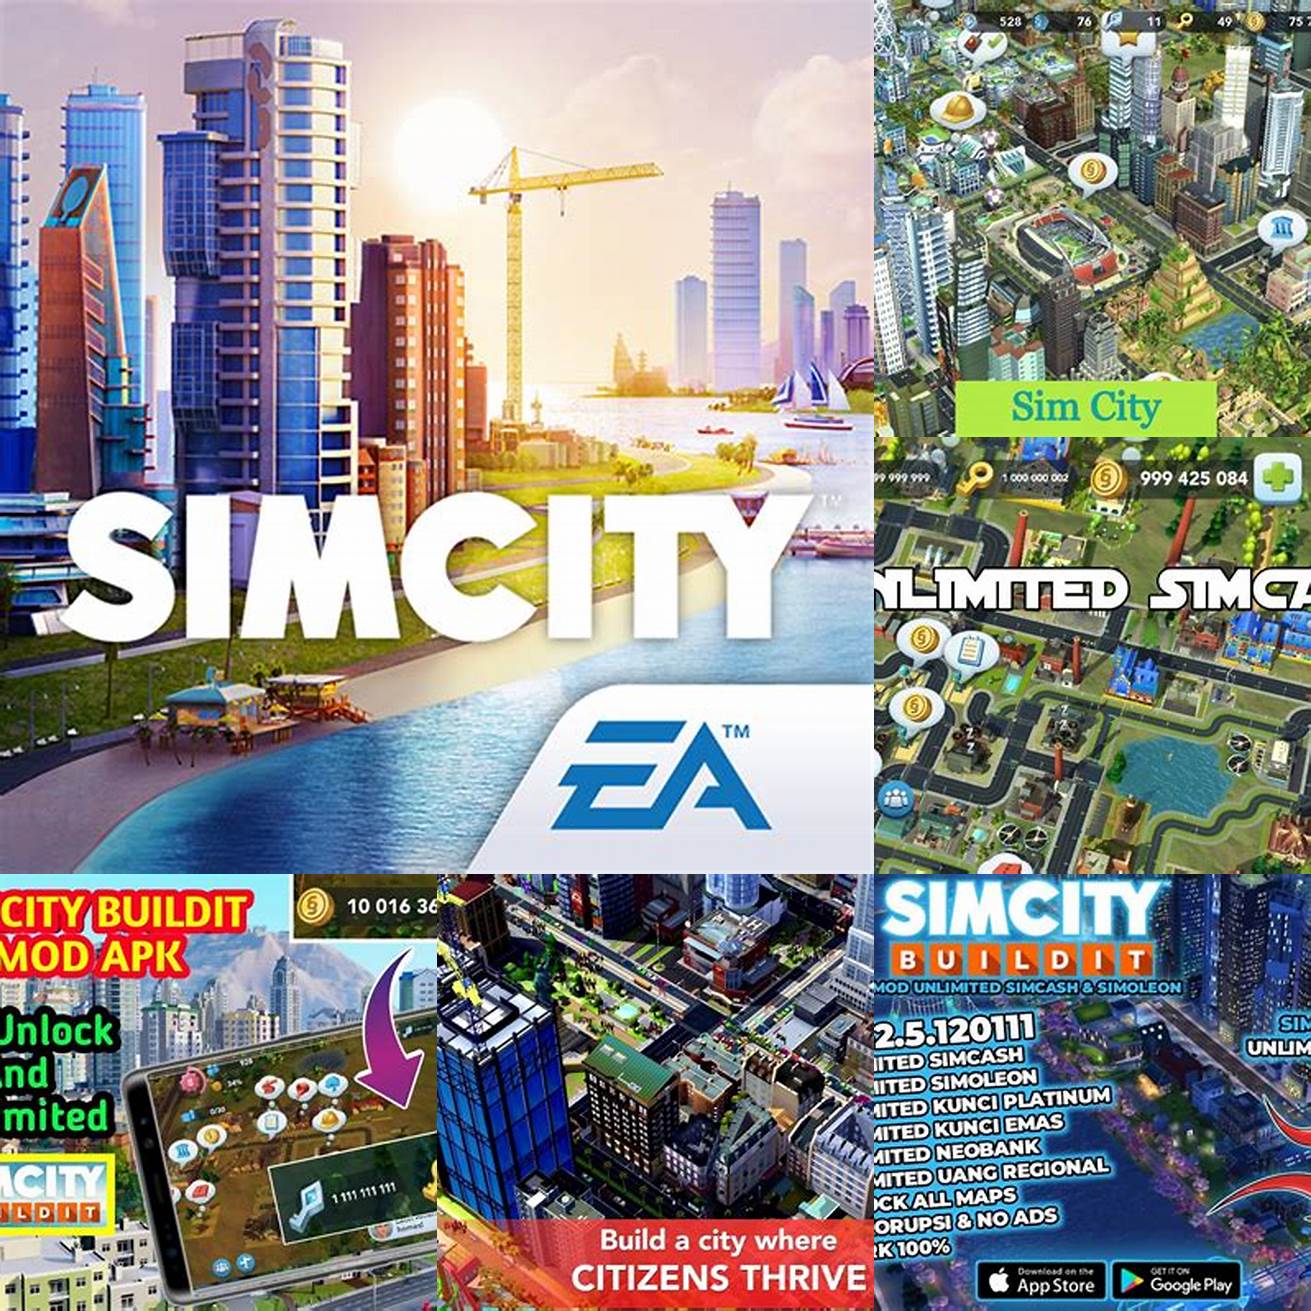 5 Gambar tampilan mod apk SimCity BuildIt Unlimited Simcash